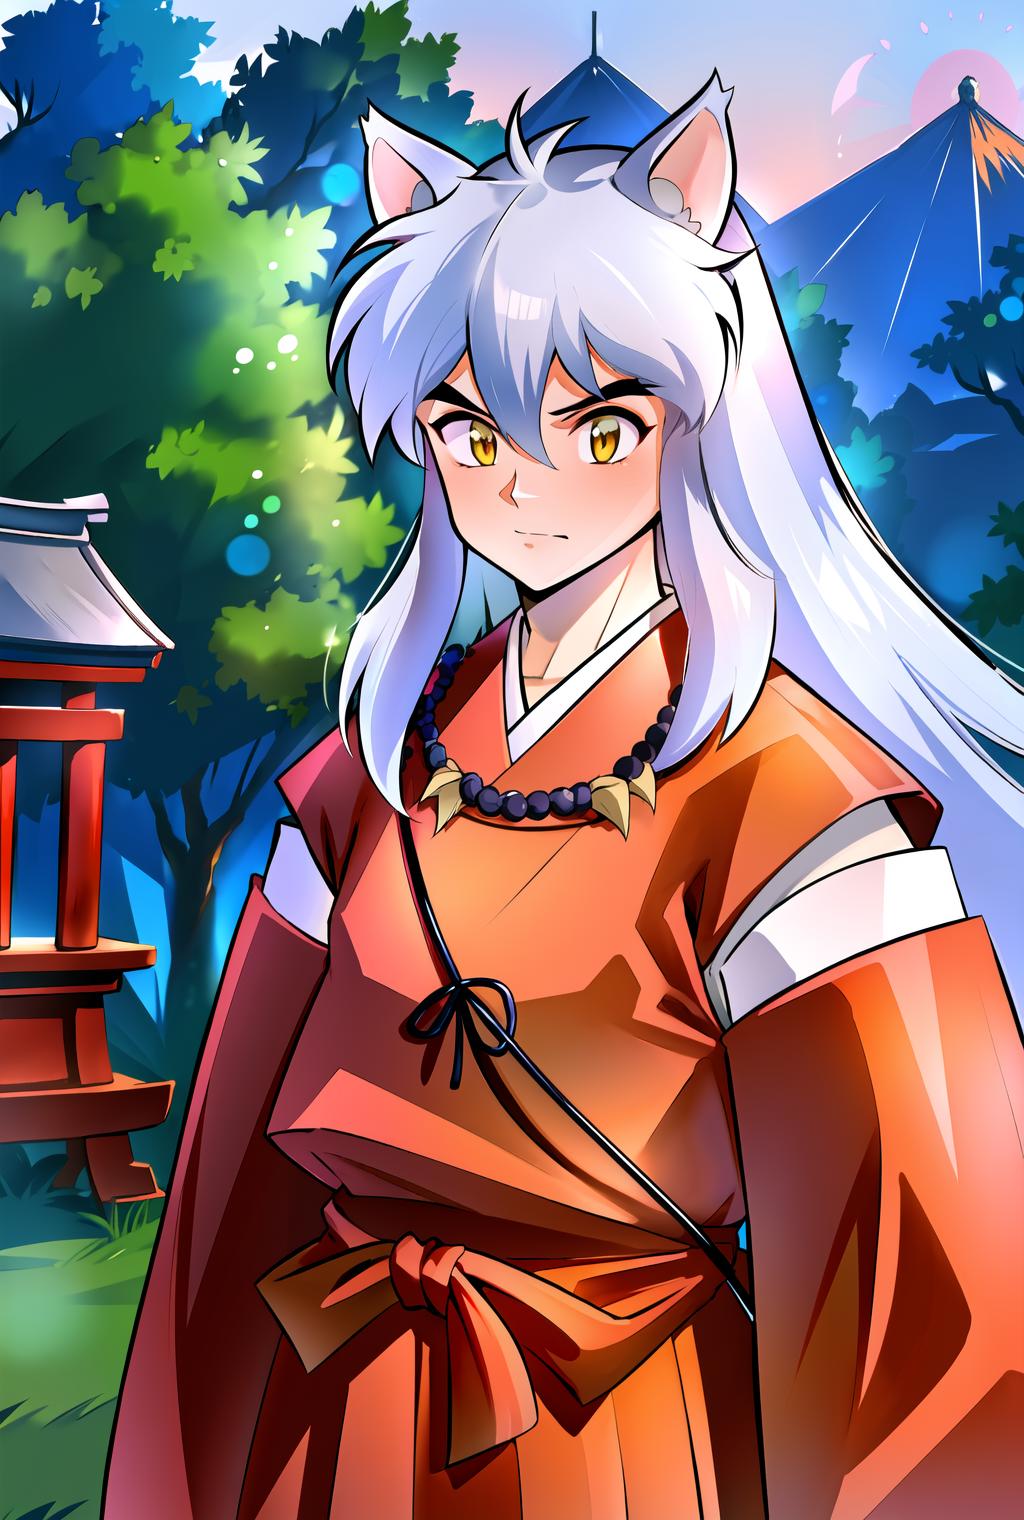 Inuyasha | Character image by IndolentCat